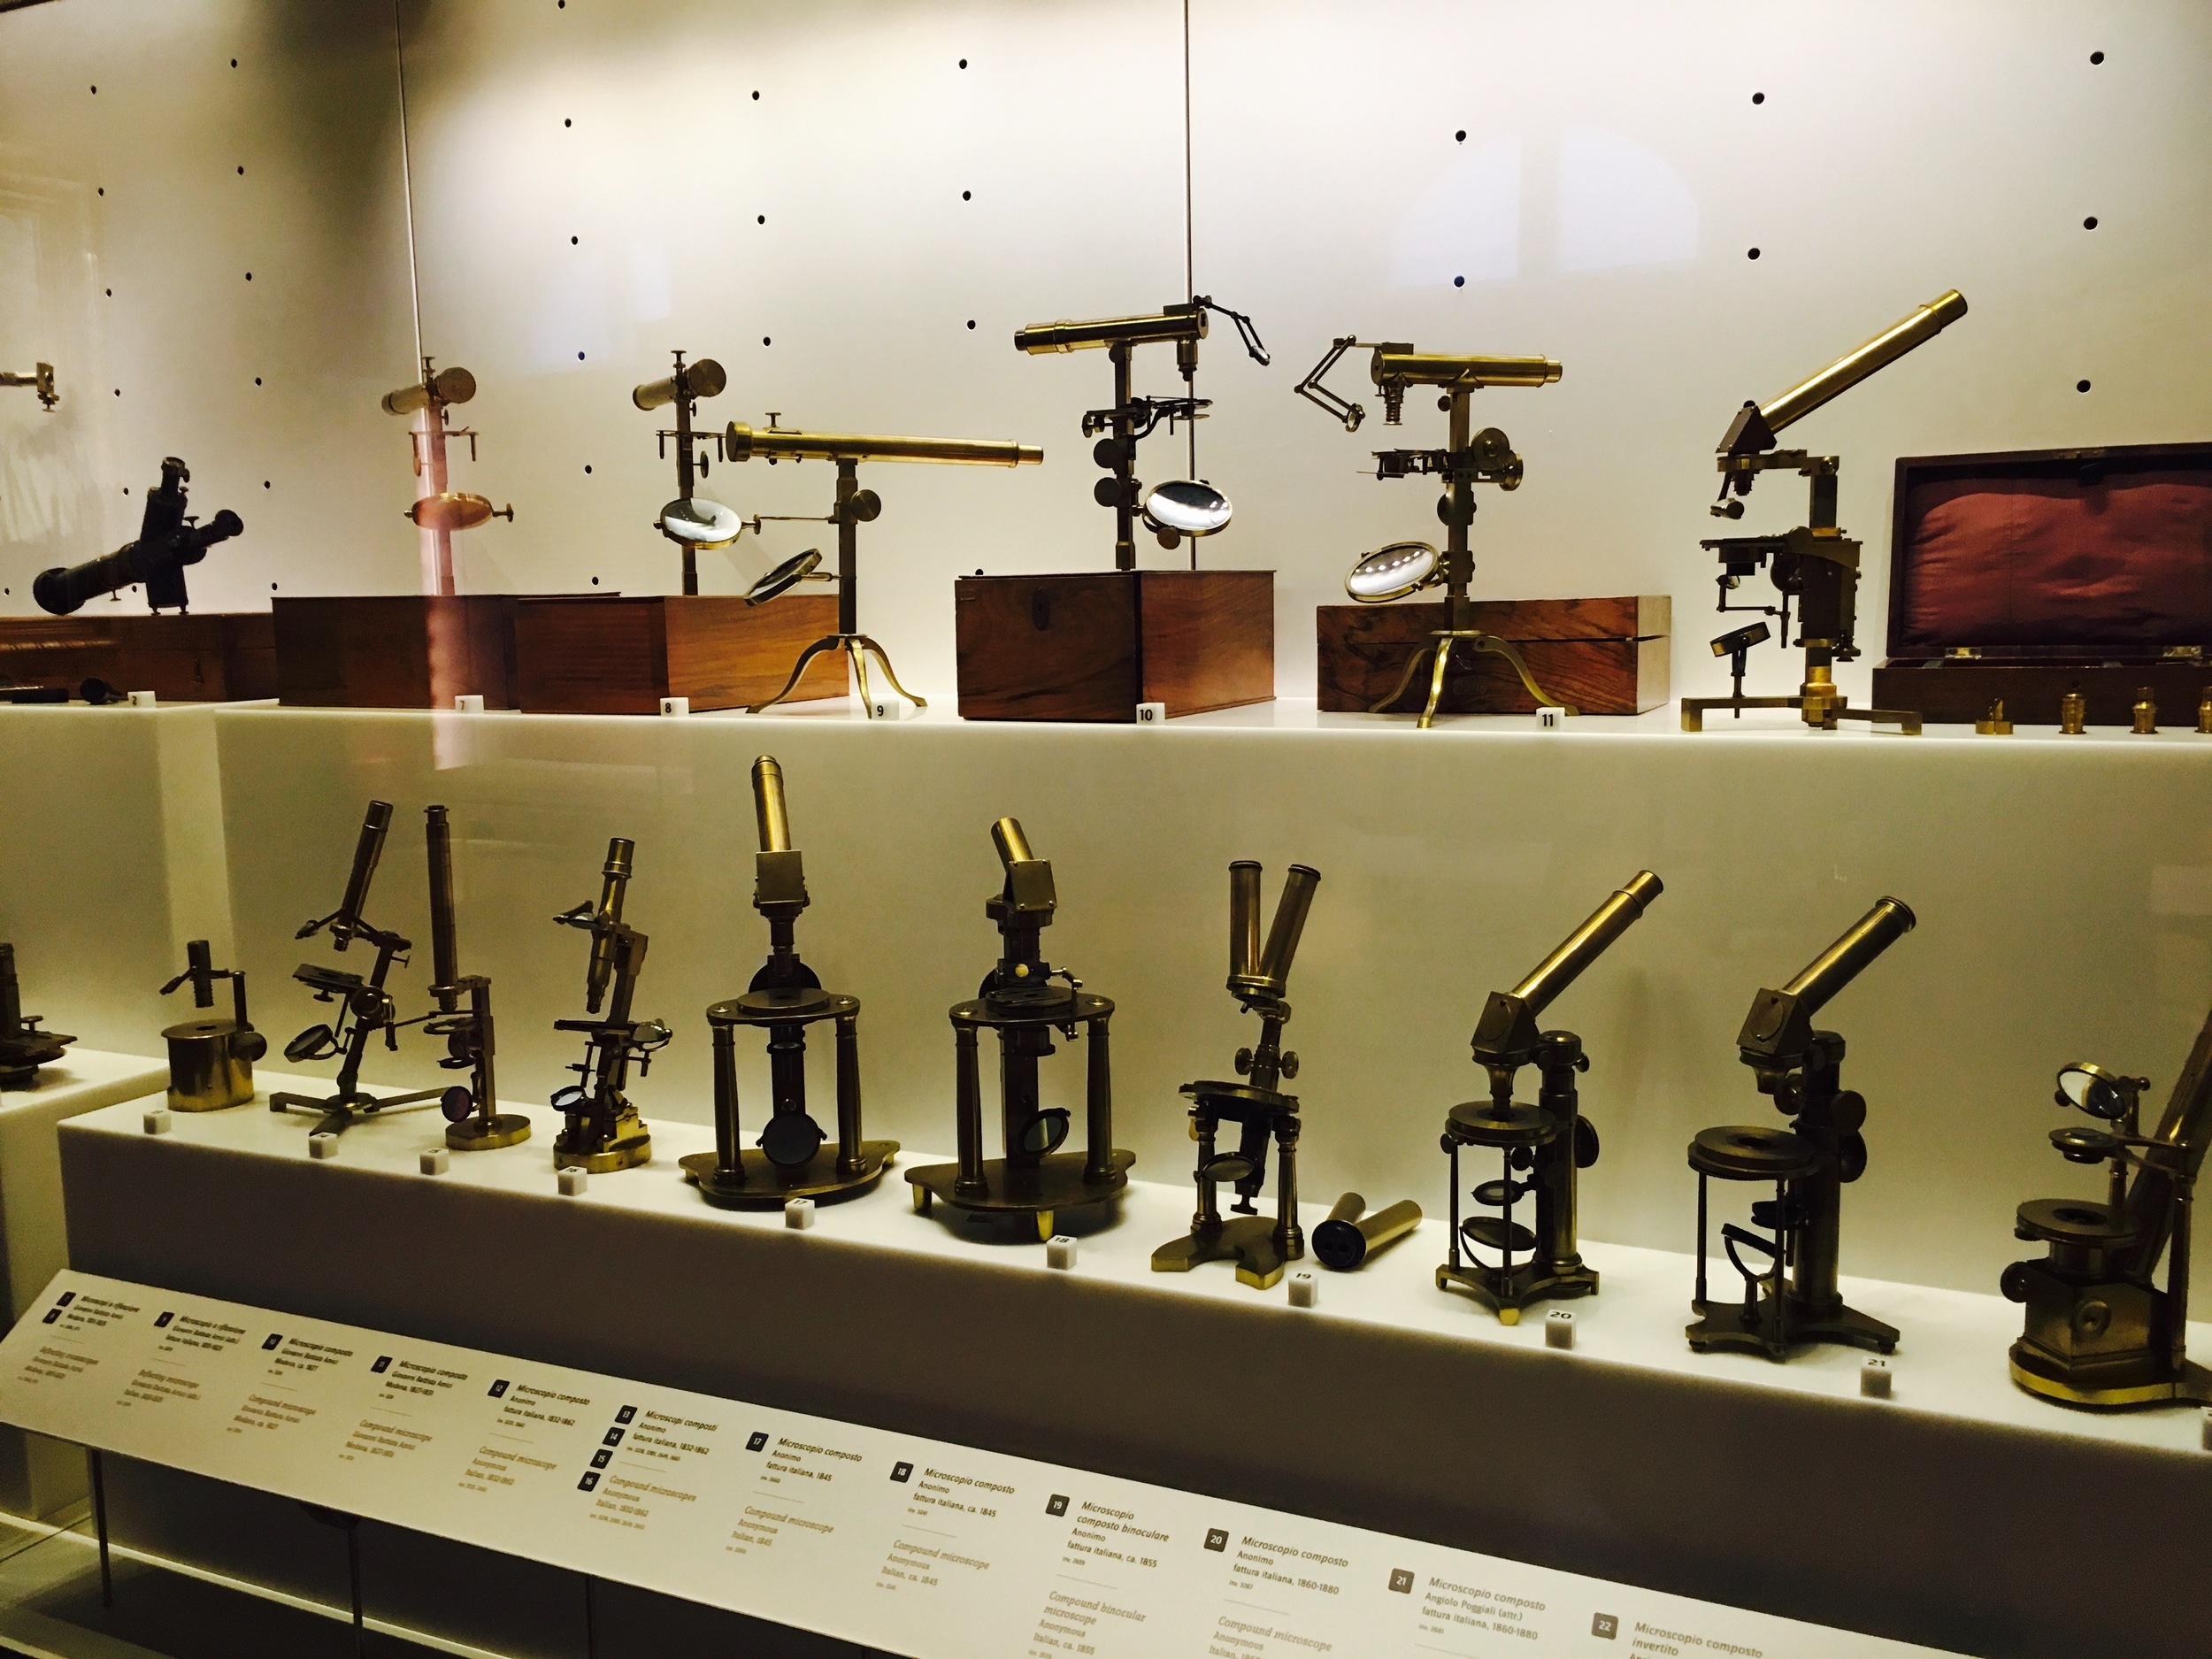 Early microscopes